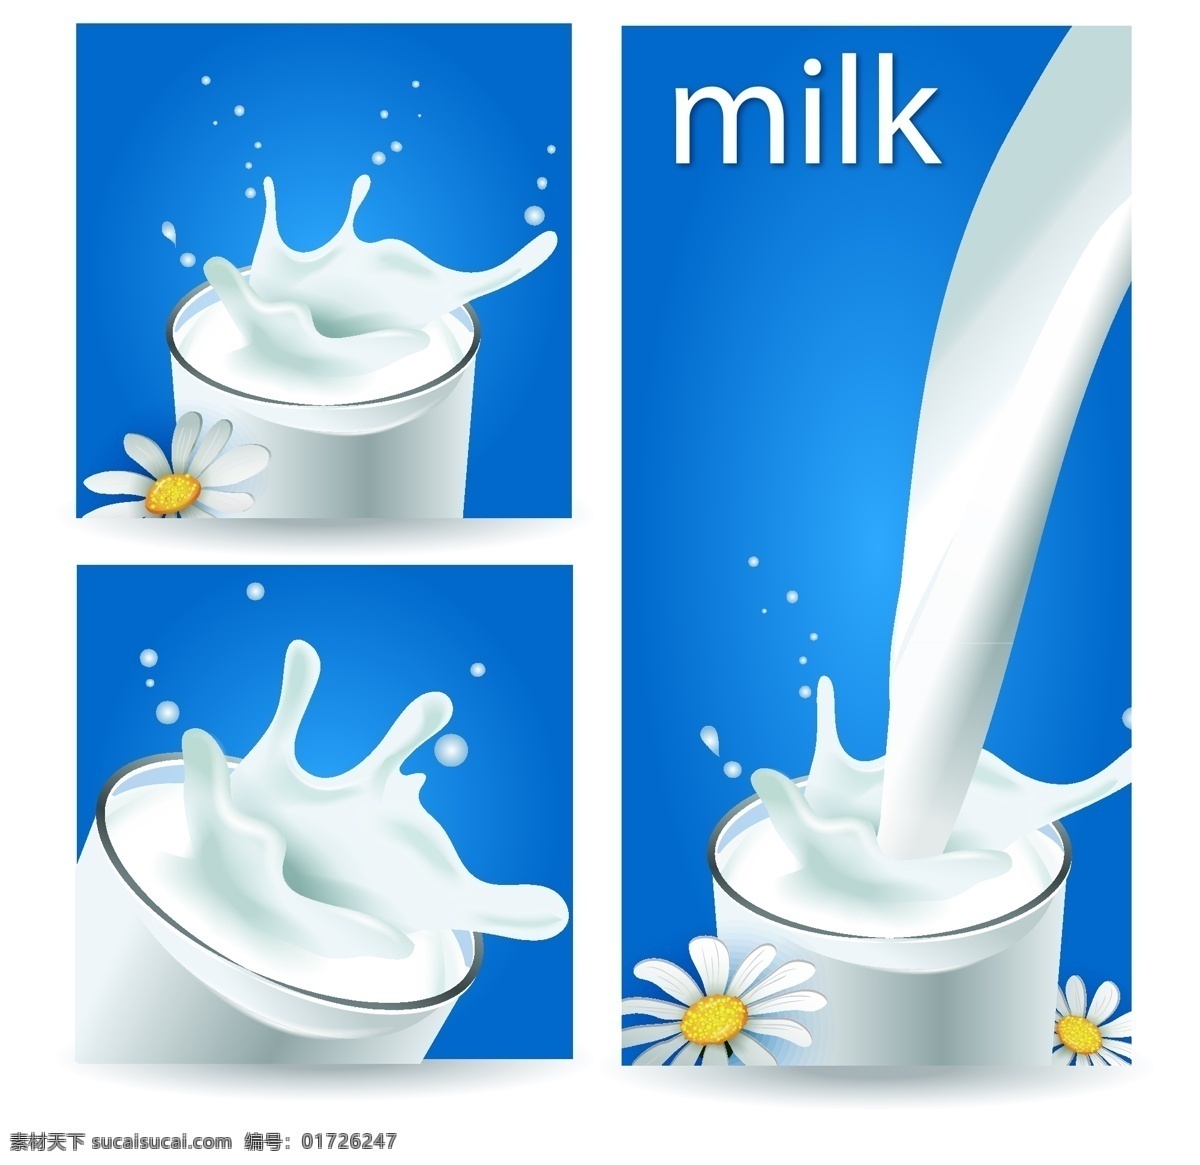 牛奶 海报 素材图片 牛奶海报素材 牛奶海报 海报素材 milk